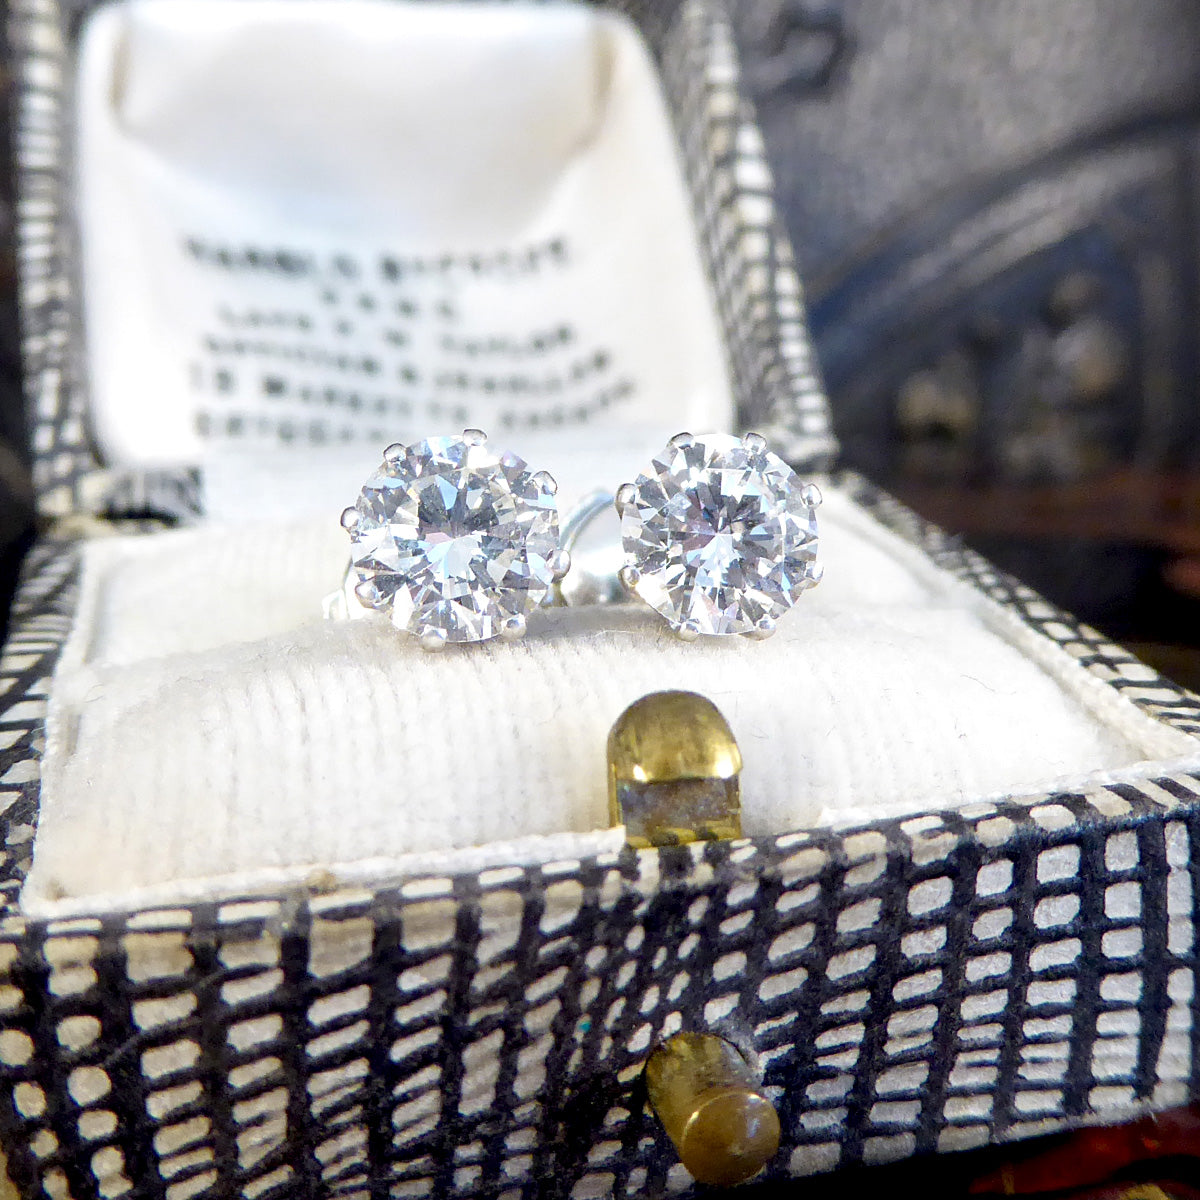 1.80ct Round Brilliant Cut Diamond Stud Earrings in Platinum